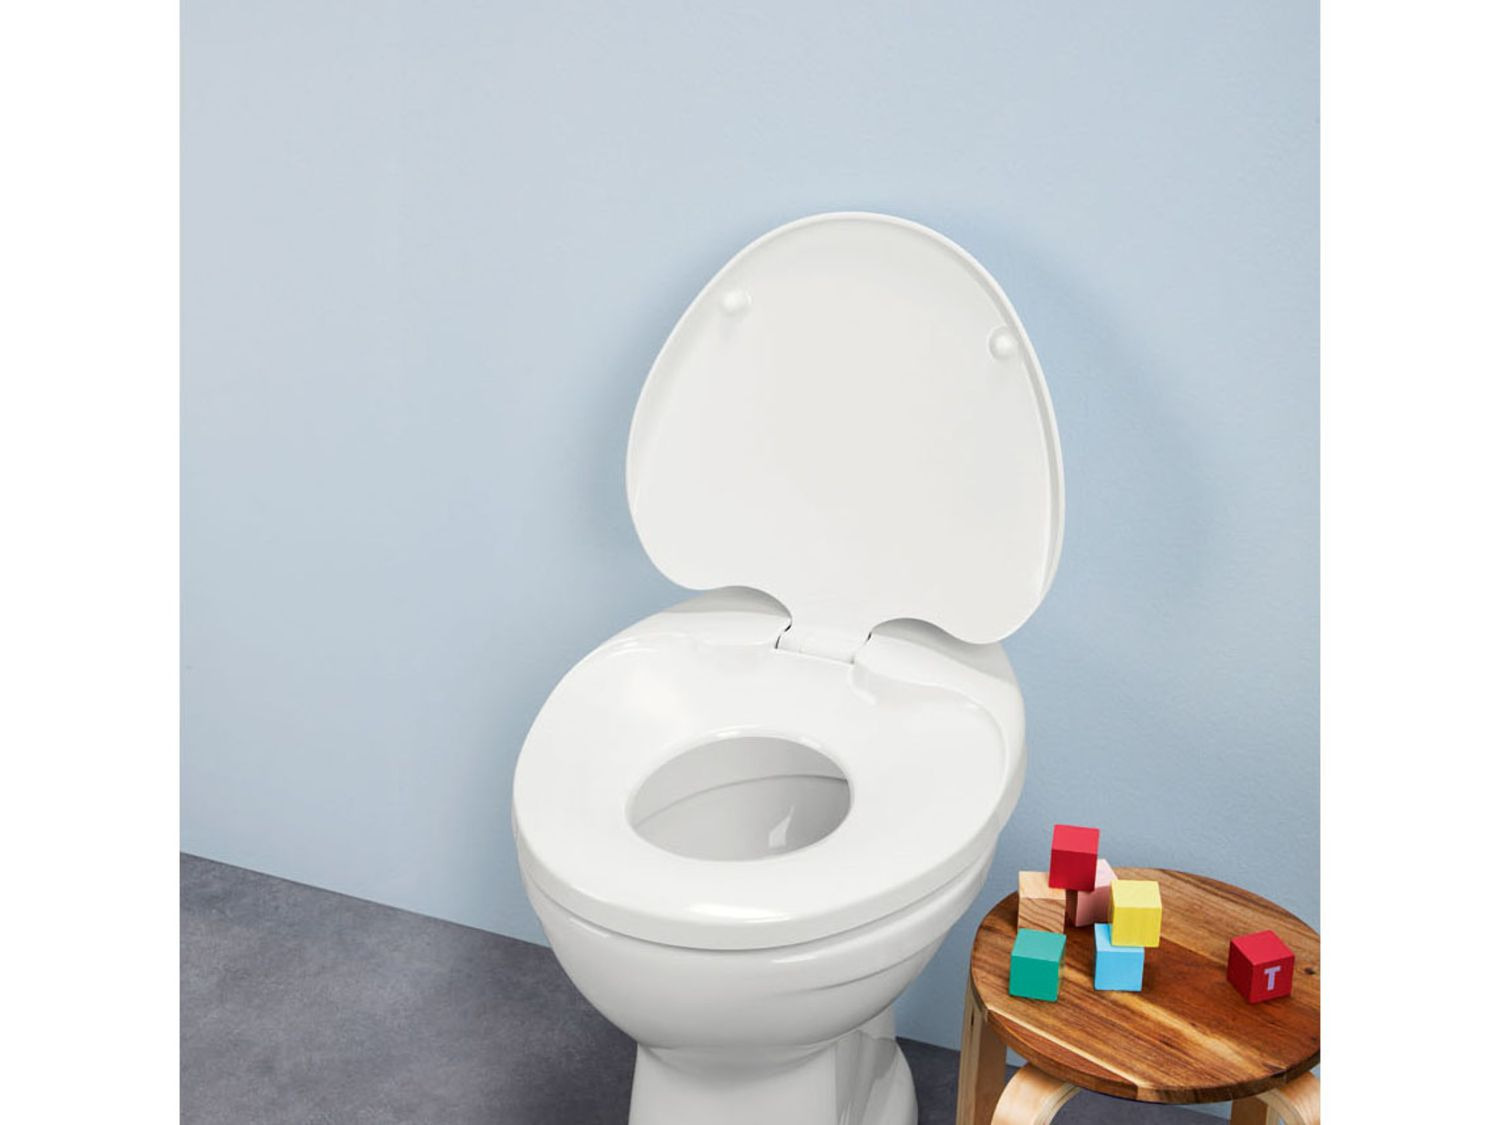 Aanpassen trog verwennen WC-bril met kinderzitje kopen? | LIDL